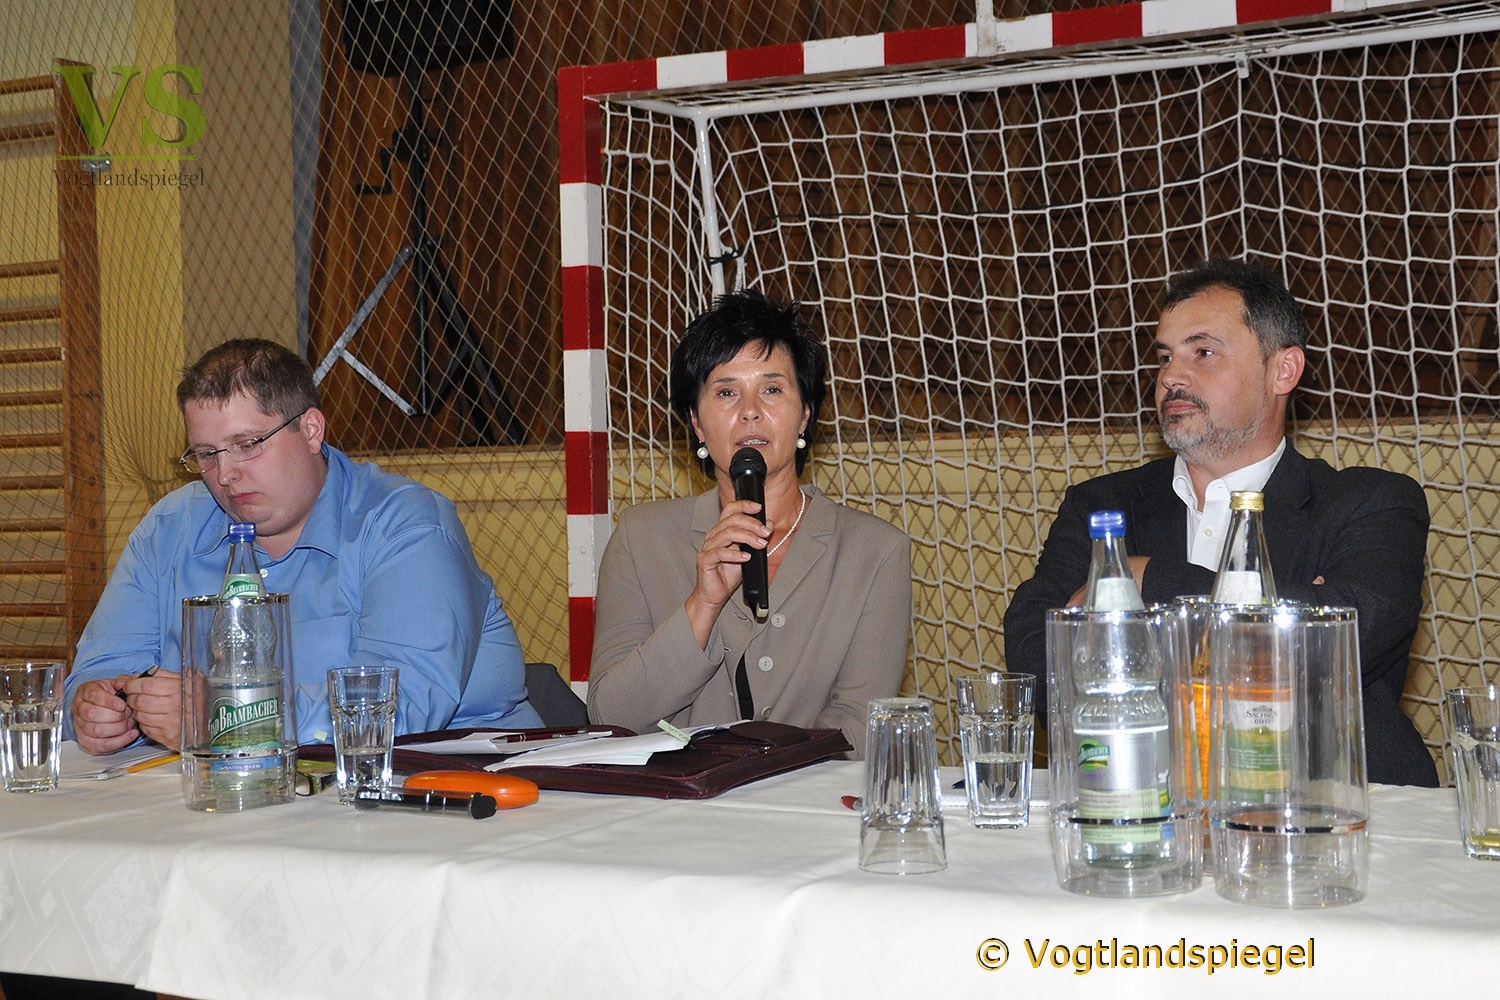 Bürgermeisterkandidaten der Landgemeinde Mohlsdorf-Teichwolframsdorf stellen sich vor